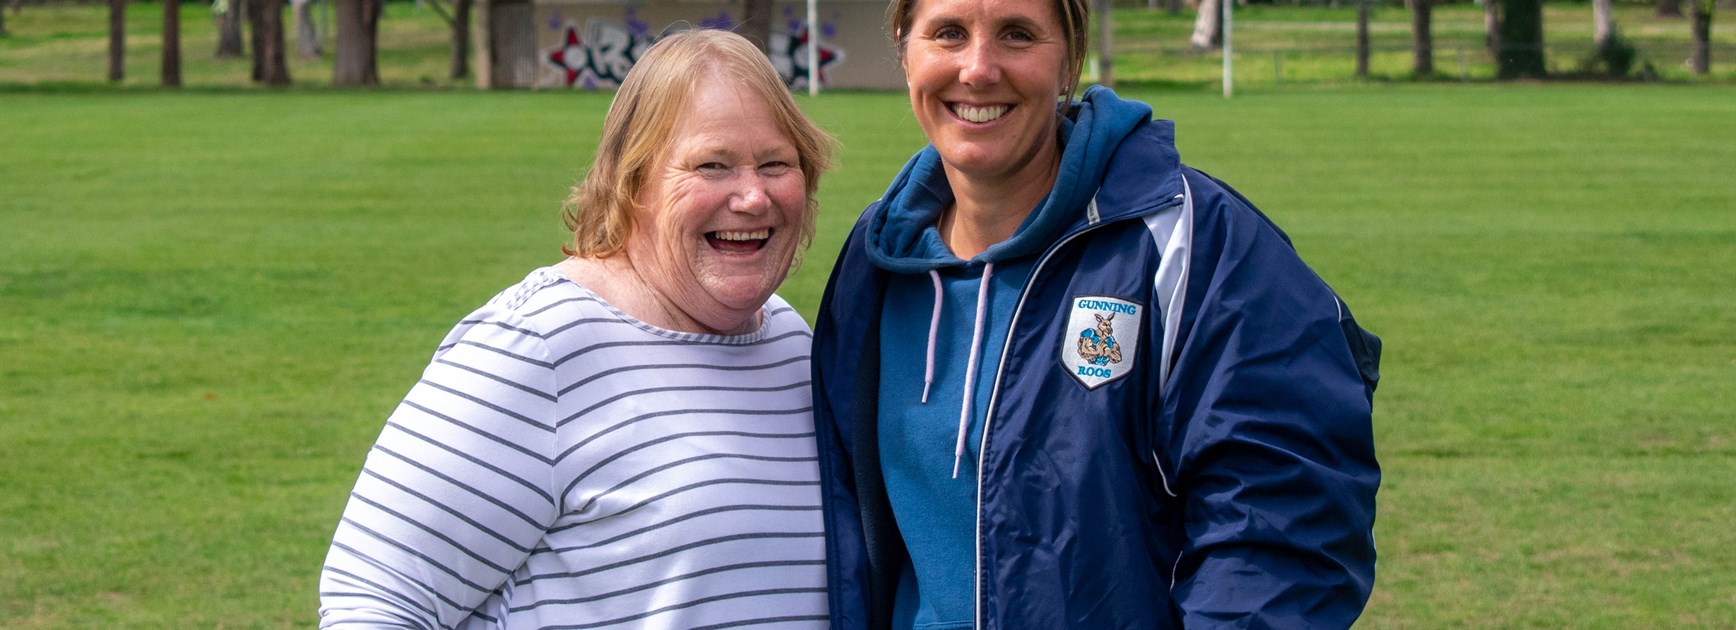 Women in League: Kathy & Christie Johnson